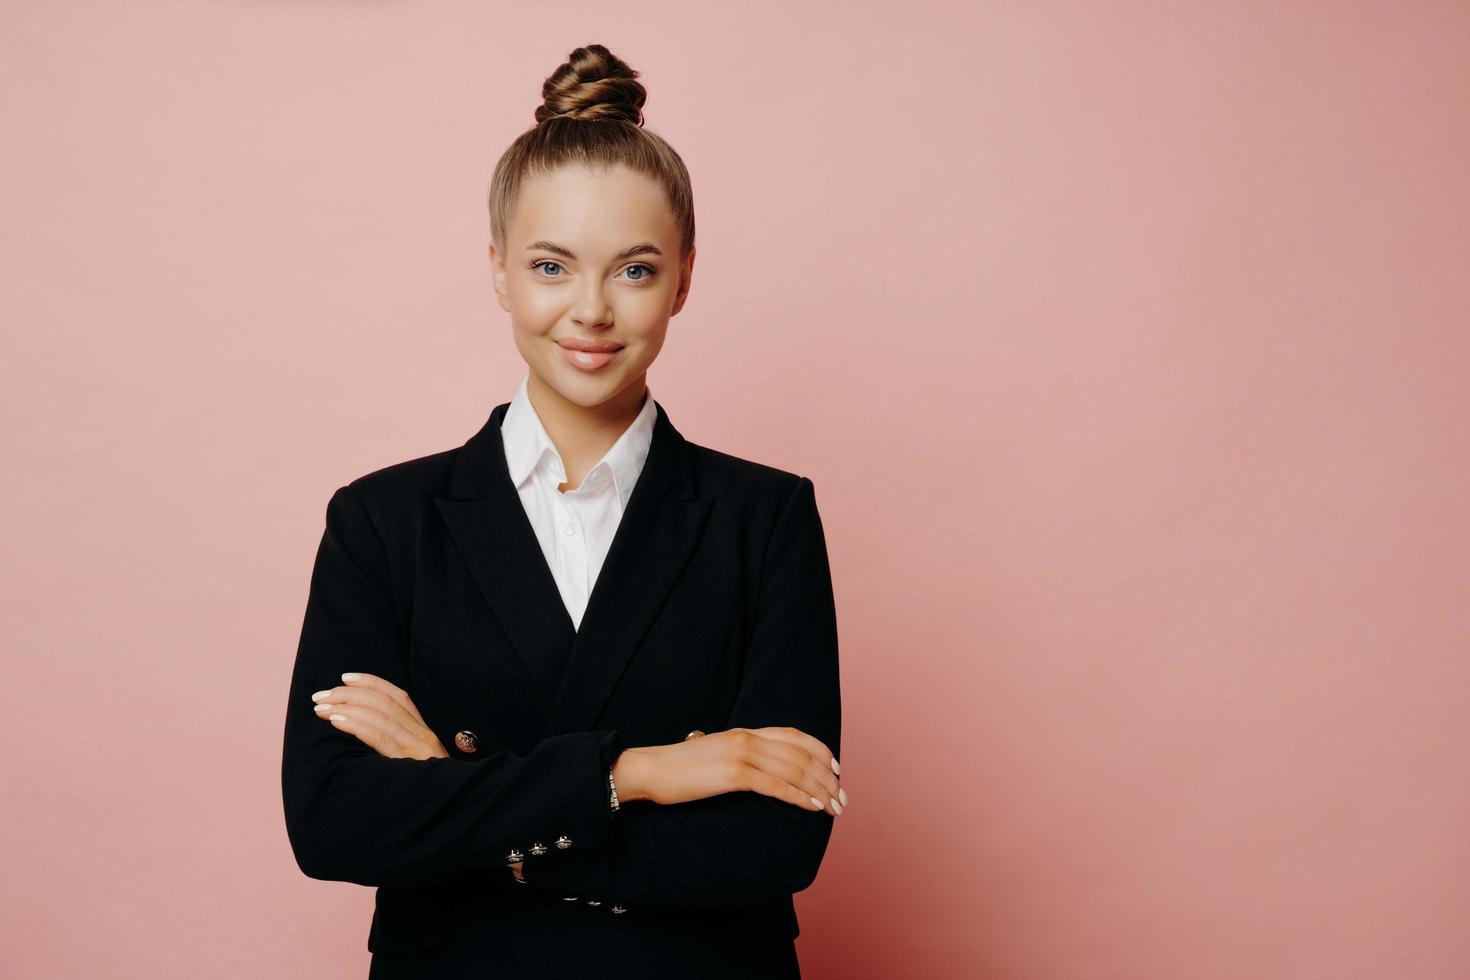 Confiant femme employée de bureau avec des cheveux en chignon posant isolé sur fond rose photo